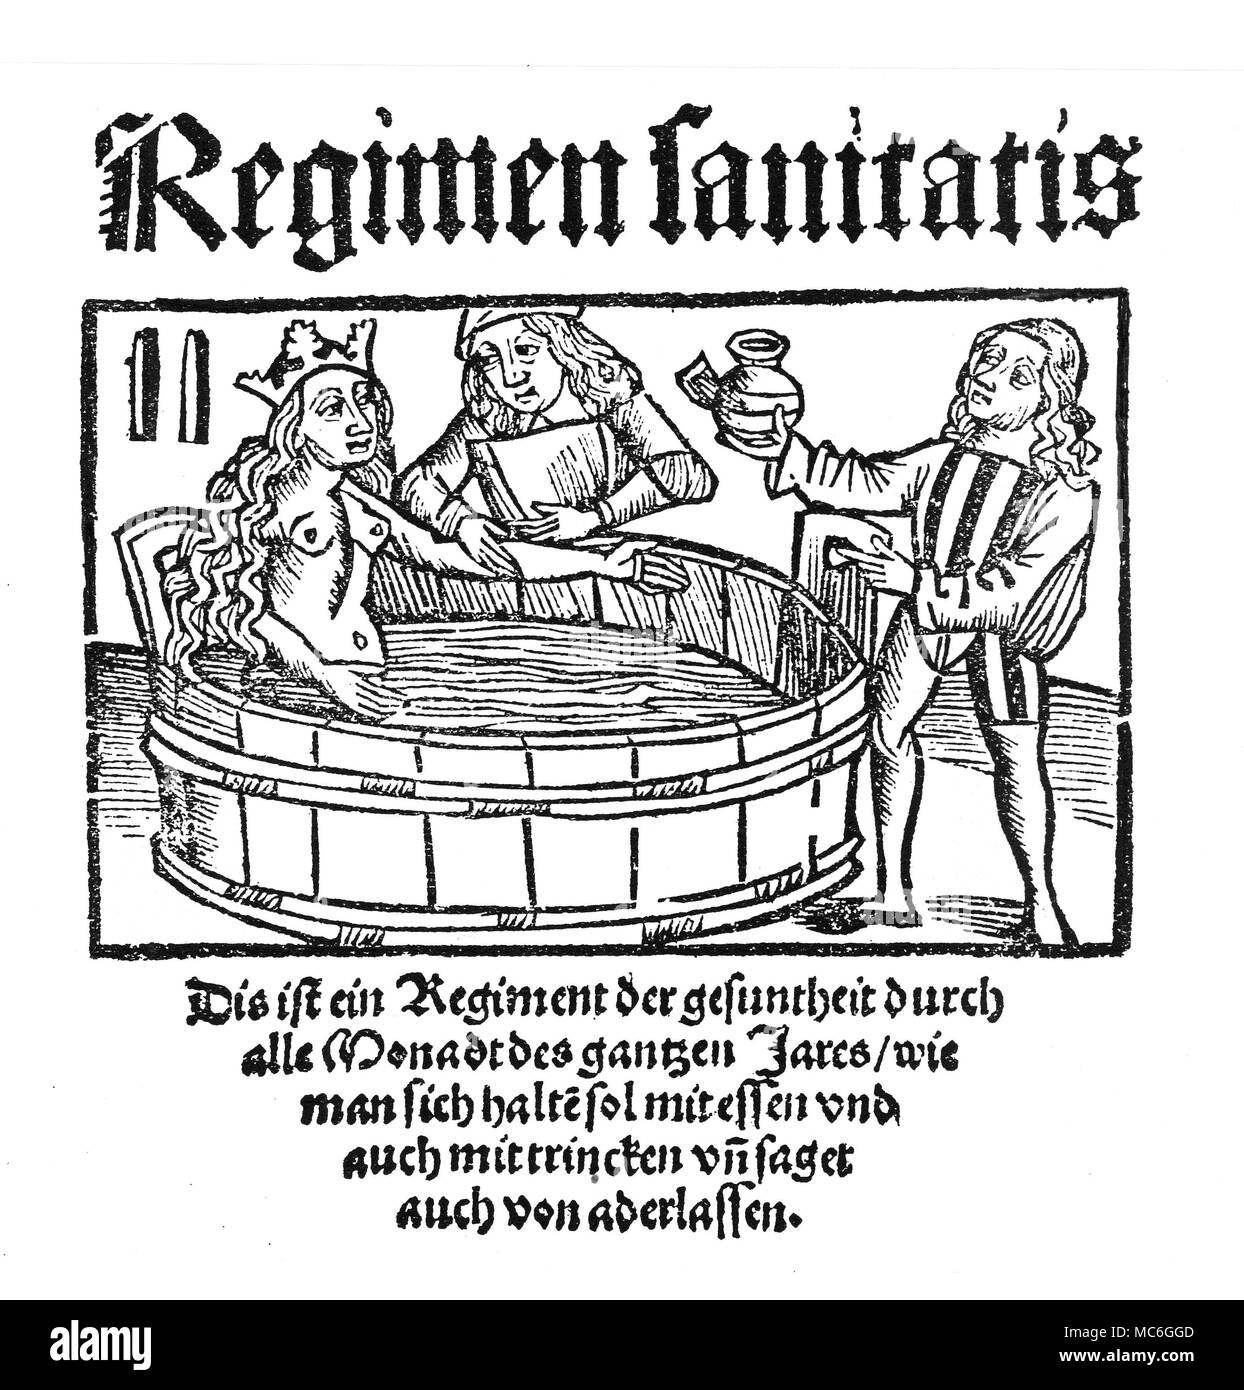 Wünschelrute wünschelrute Rhabdomancy, oder mit Hilfe von DIVINING-Stangen auf der Suche nach verborgenen Metalle. Holzschnitt aus Georg Agricola De Re Metallica, 1571. Stockfoto